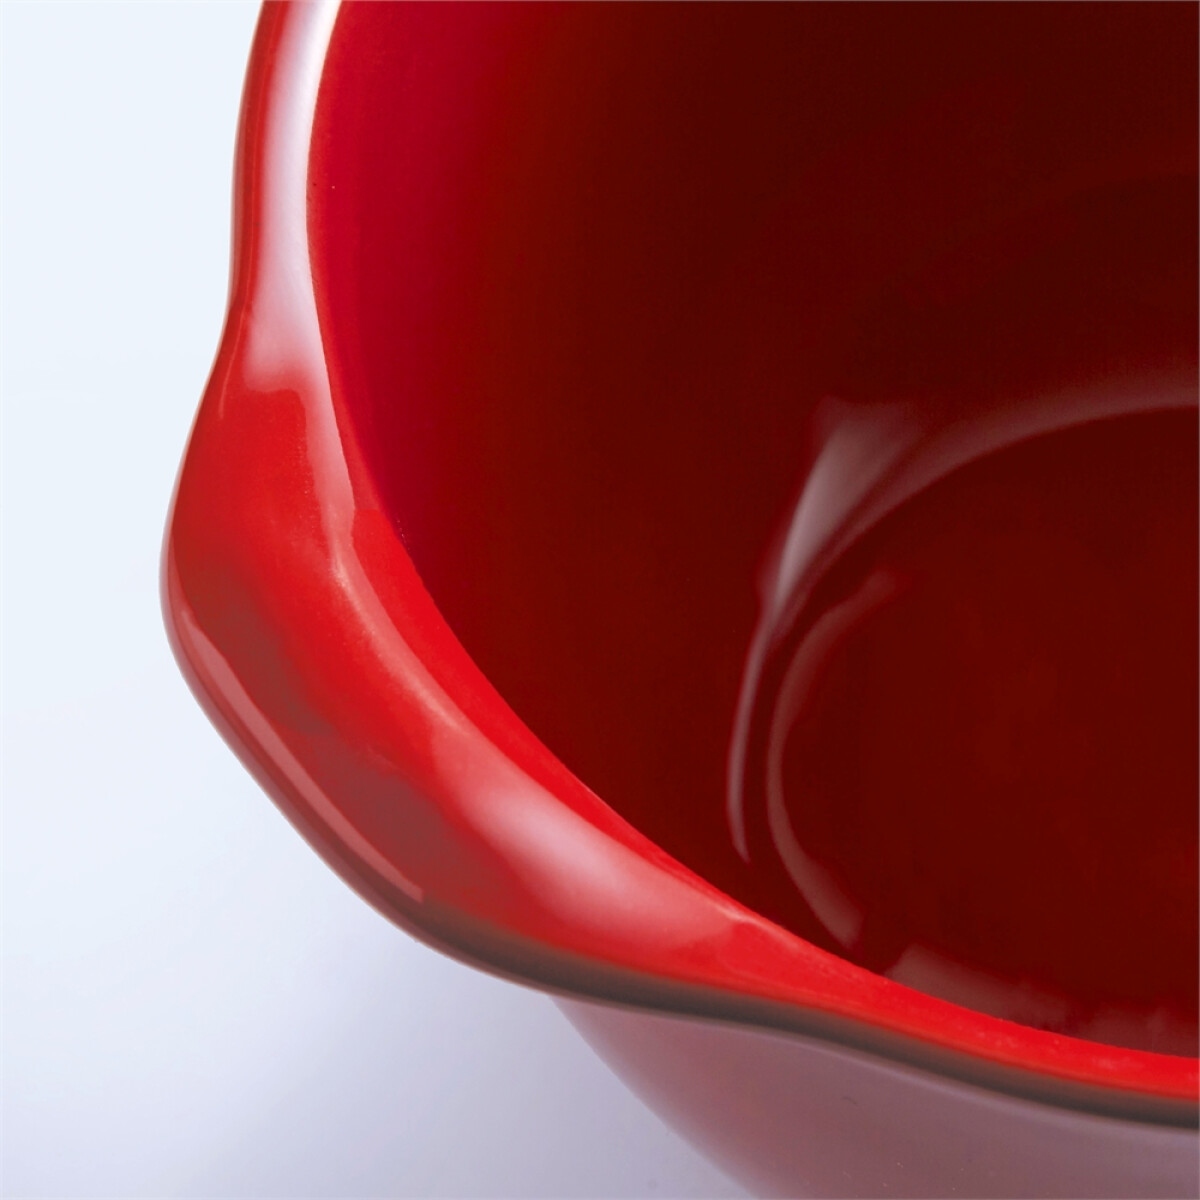 Керамична купичка EMILE HENRY GRATIN BOWL - Ø 16,7 см, цвят червен